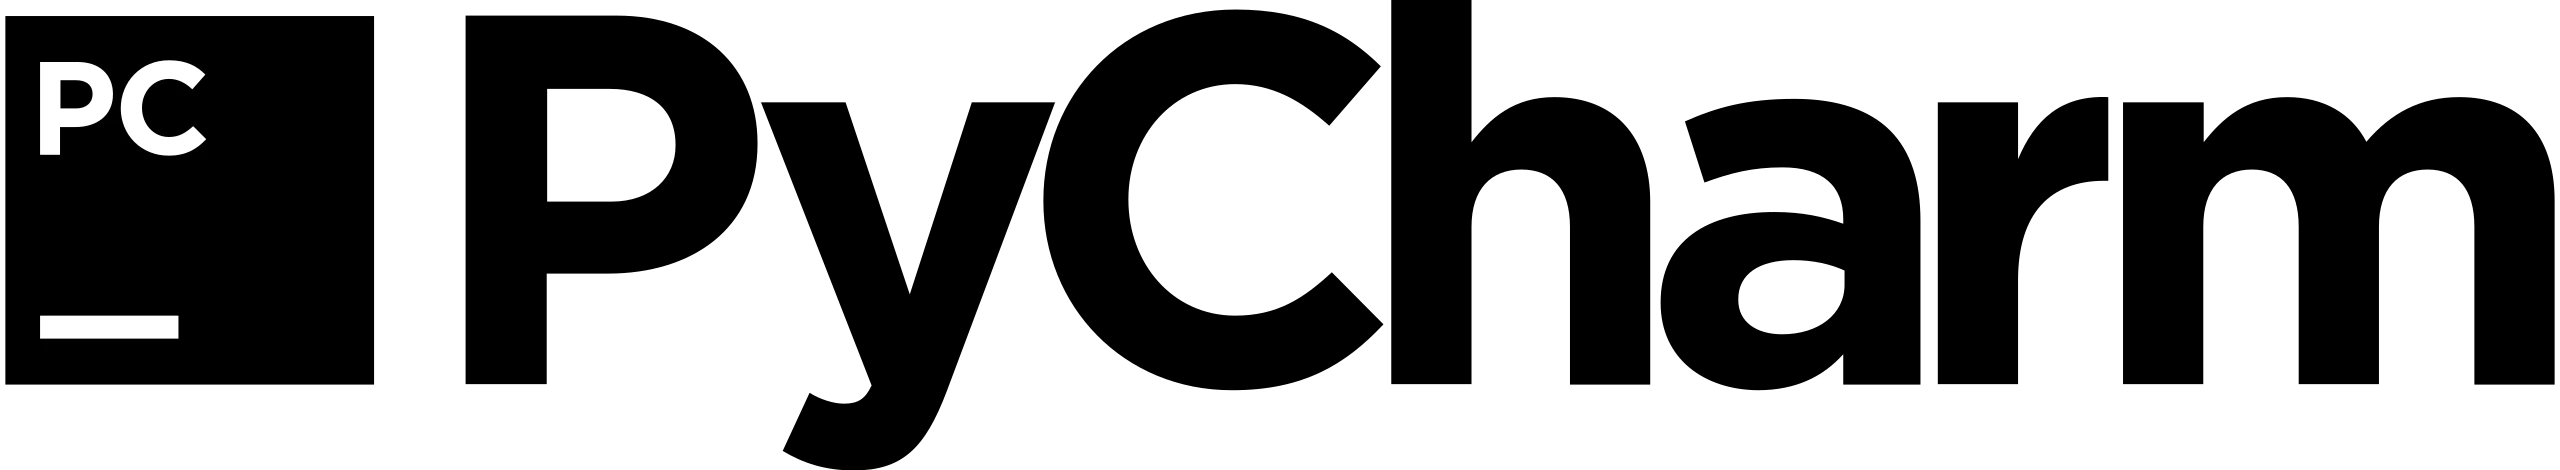 PyCharm ロゴ